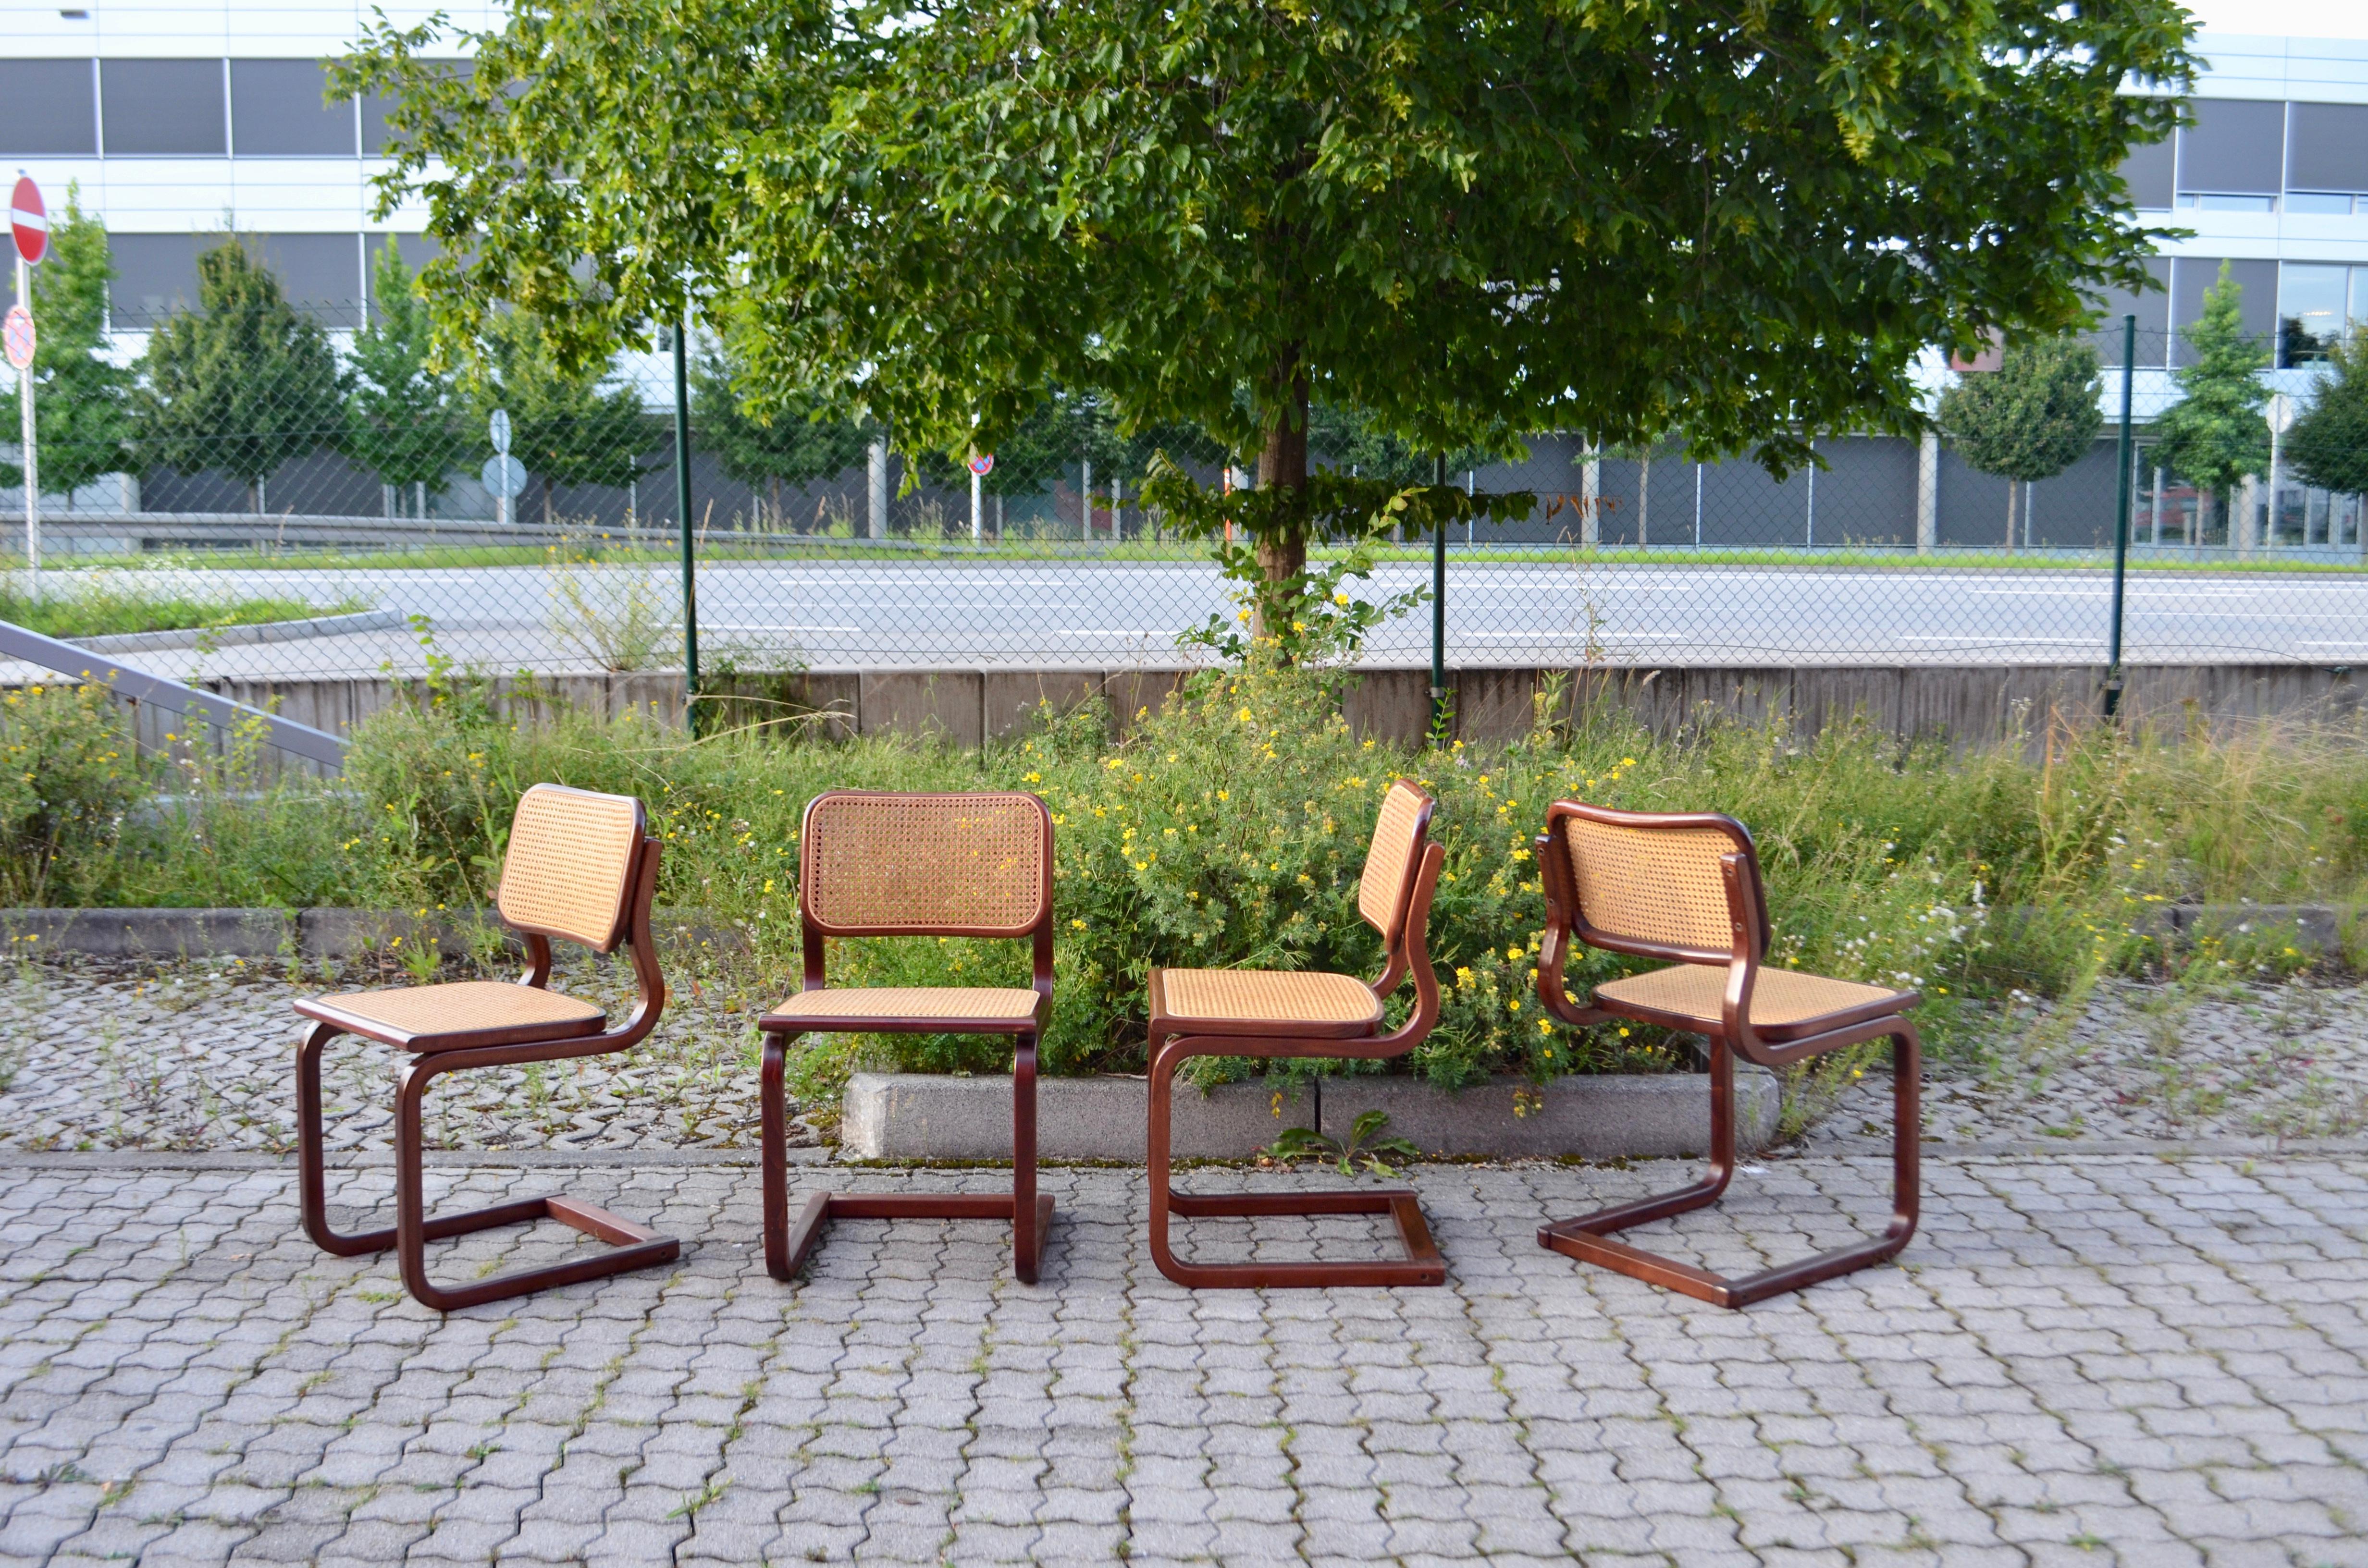 Ces chaises cantilever vintage sont fabriquées en Italie dans les années 70
À la manière de Marcel Breuer, les chaises sont fortement inspirées du mouvement Bauhaus et du designer finlandais Alvar Aalto.
Elle a le même design que la célèbre chaise